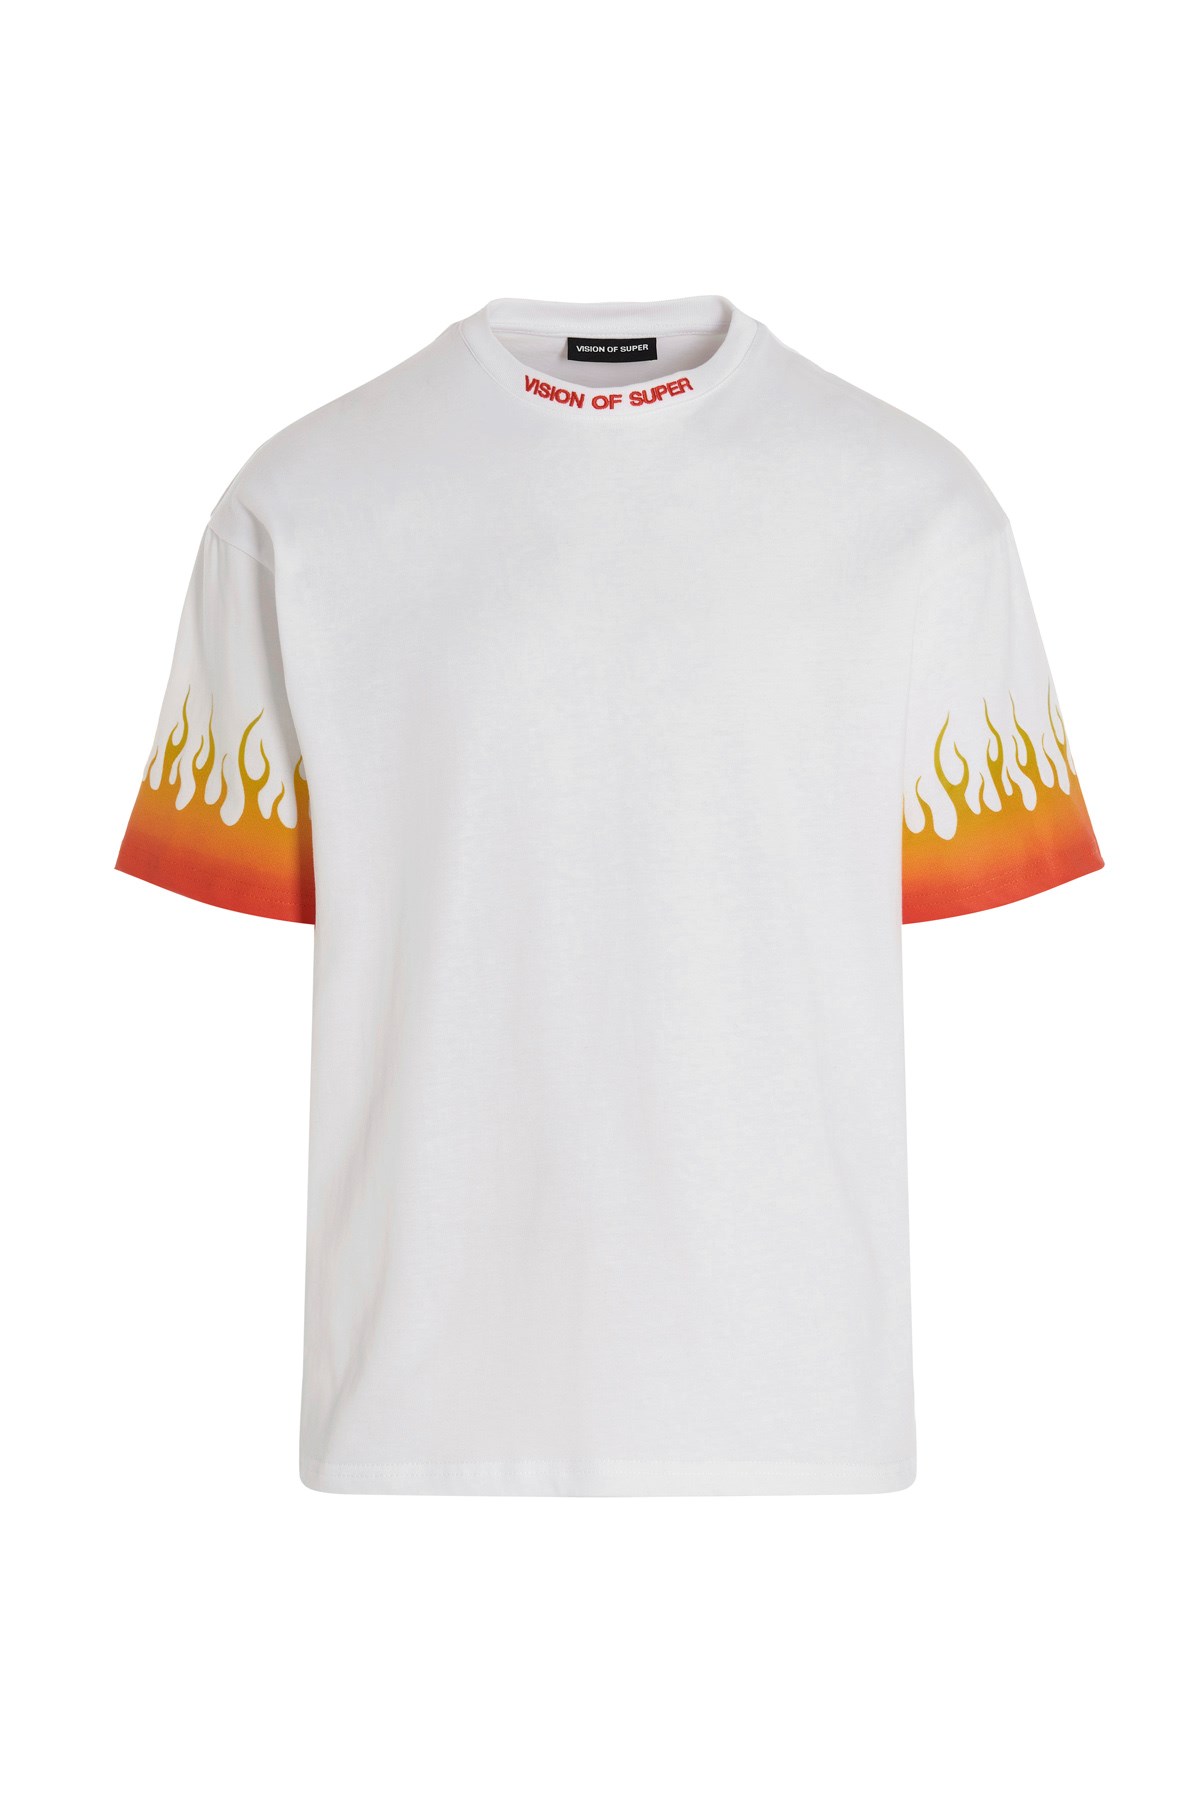 VISION OF SUPER 'Flame Orange’ T-Shirt